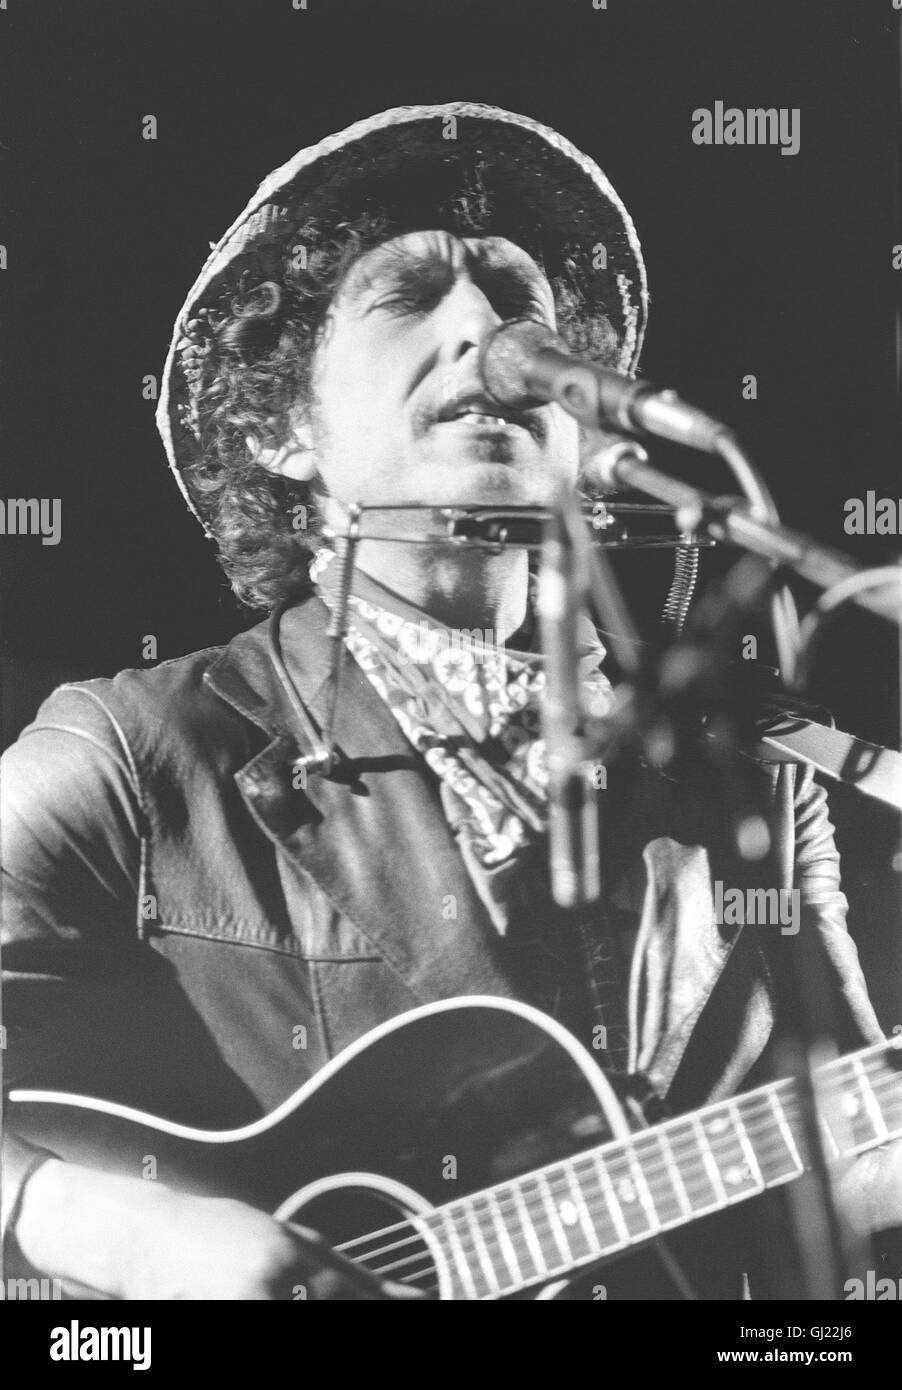 BOB DYLAN - THINGS HAVE (N'T) CHANGED Bild: Bob Dylan bei einem Konzert in den 1980er Jahren. Auch Rocklegenden werden älter. BOB DYLAN wurde am 24. Mai 2001 - 60 Jahre alt. Über 500 Songs hat er seit den frühen 60er Jahren geschrieben, knapp 50 Alben eingespielt. Er begann als der spröde Star der gegen Establishment und Vietnam aufbegehrenden Jugend, der Genius loci von Woodstock, wo er lange lebte, aber nicht auftrat. Irgendwann in den 80er Jahren begann Dylan dann weltweit aufzutreten. Bis heute. Wenn Legenden altern, werden sie dekoriert: 2000 fiel sein Name im Zusammenhang mit dem Stock Photo